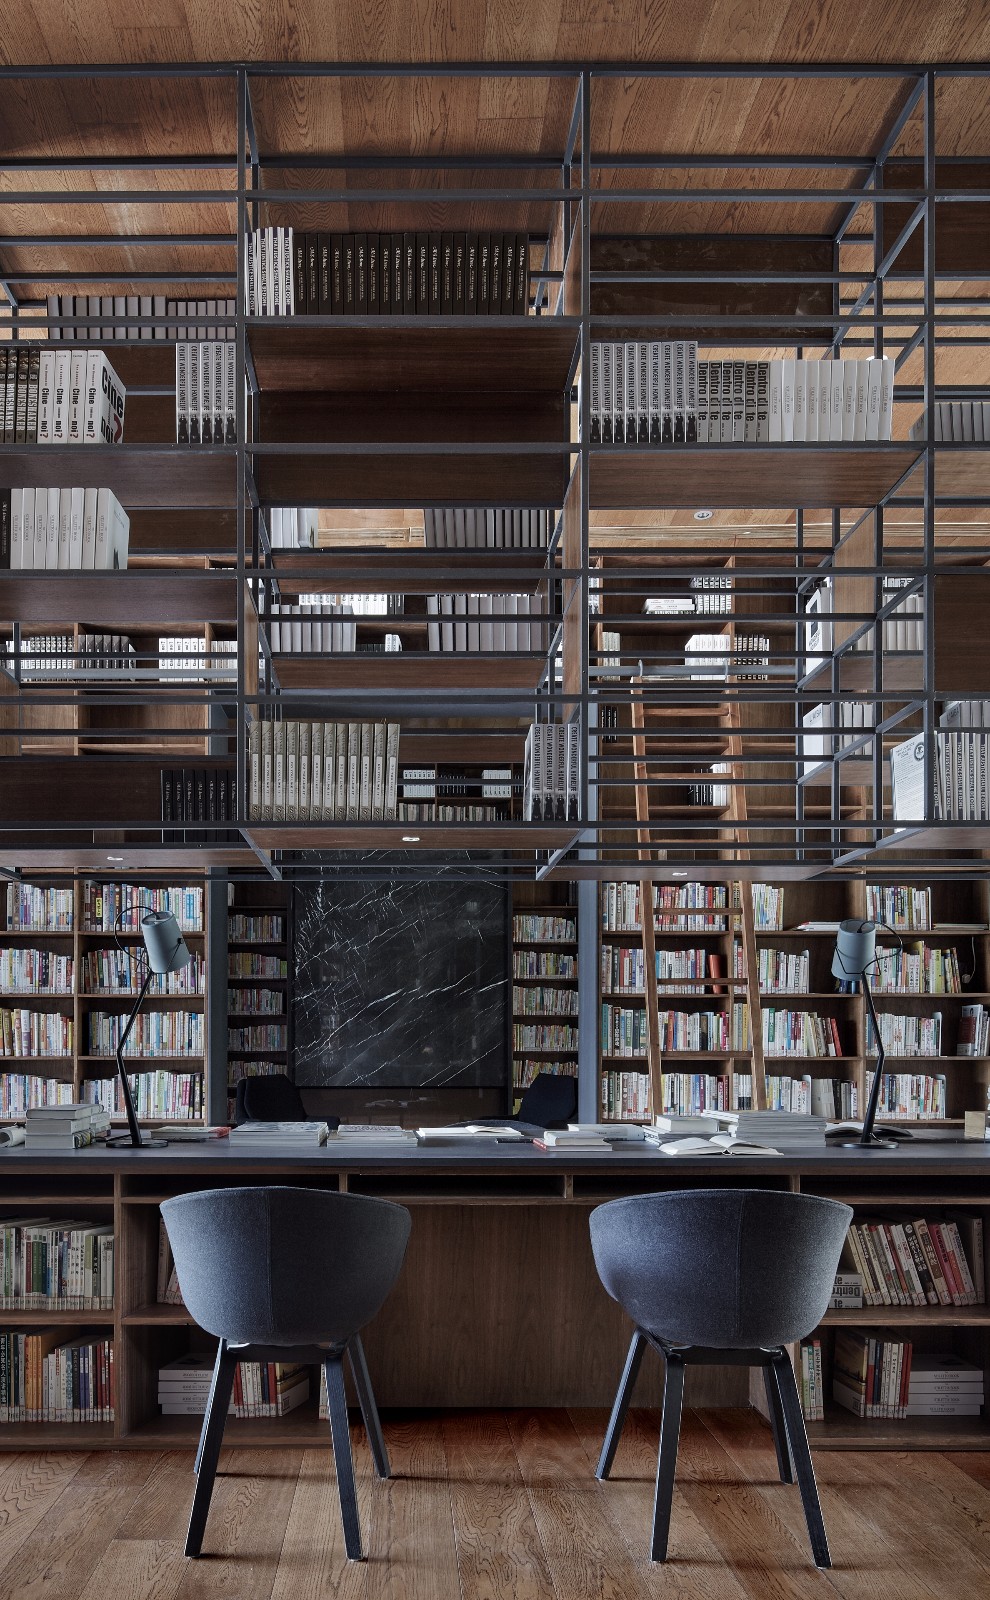 天堂应该是图书馆的模样——南京句容市图书馆金科分馆 | 风合睦晨空间设计